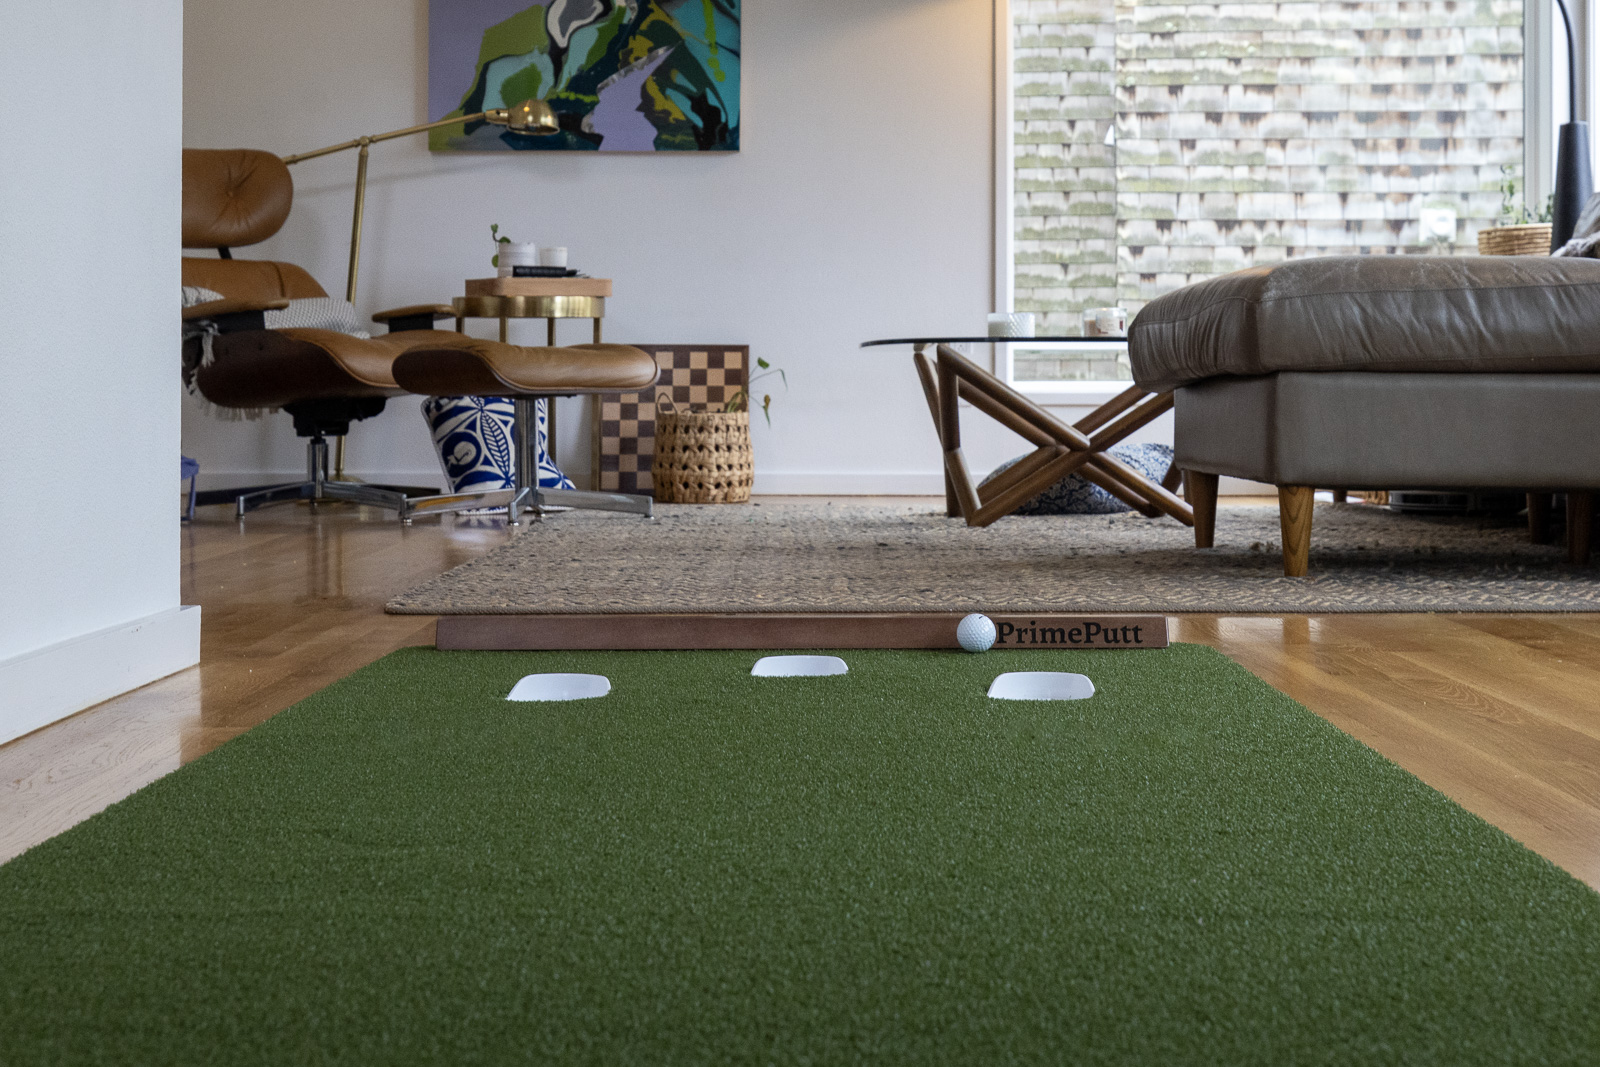 Indoor Putting Mat vs. Outdoor Putting Green: What's Best? – PrimePutt